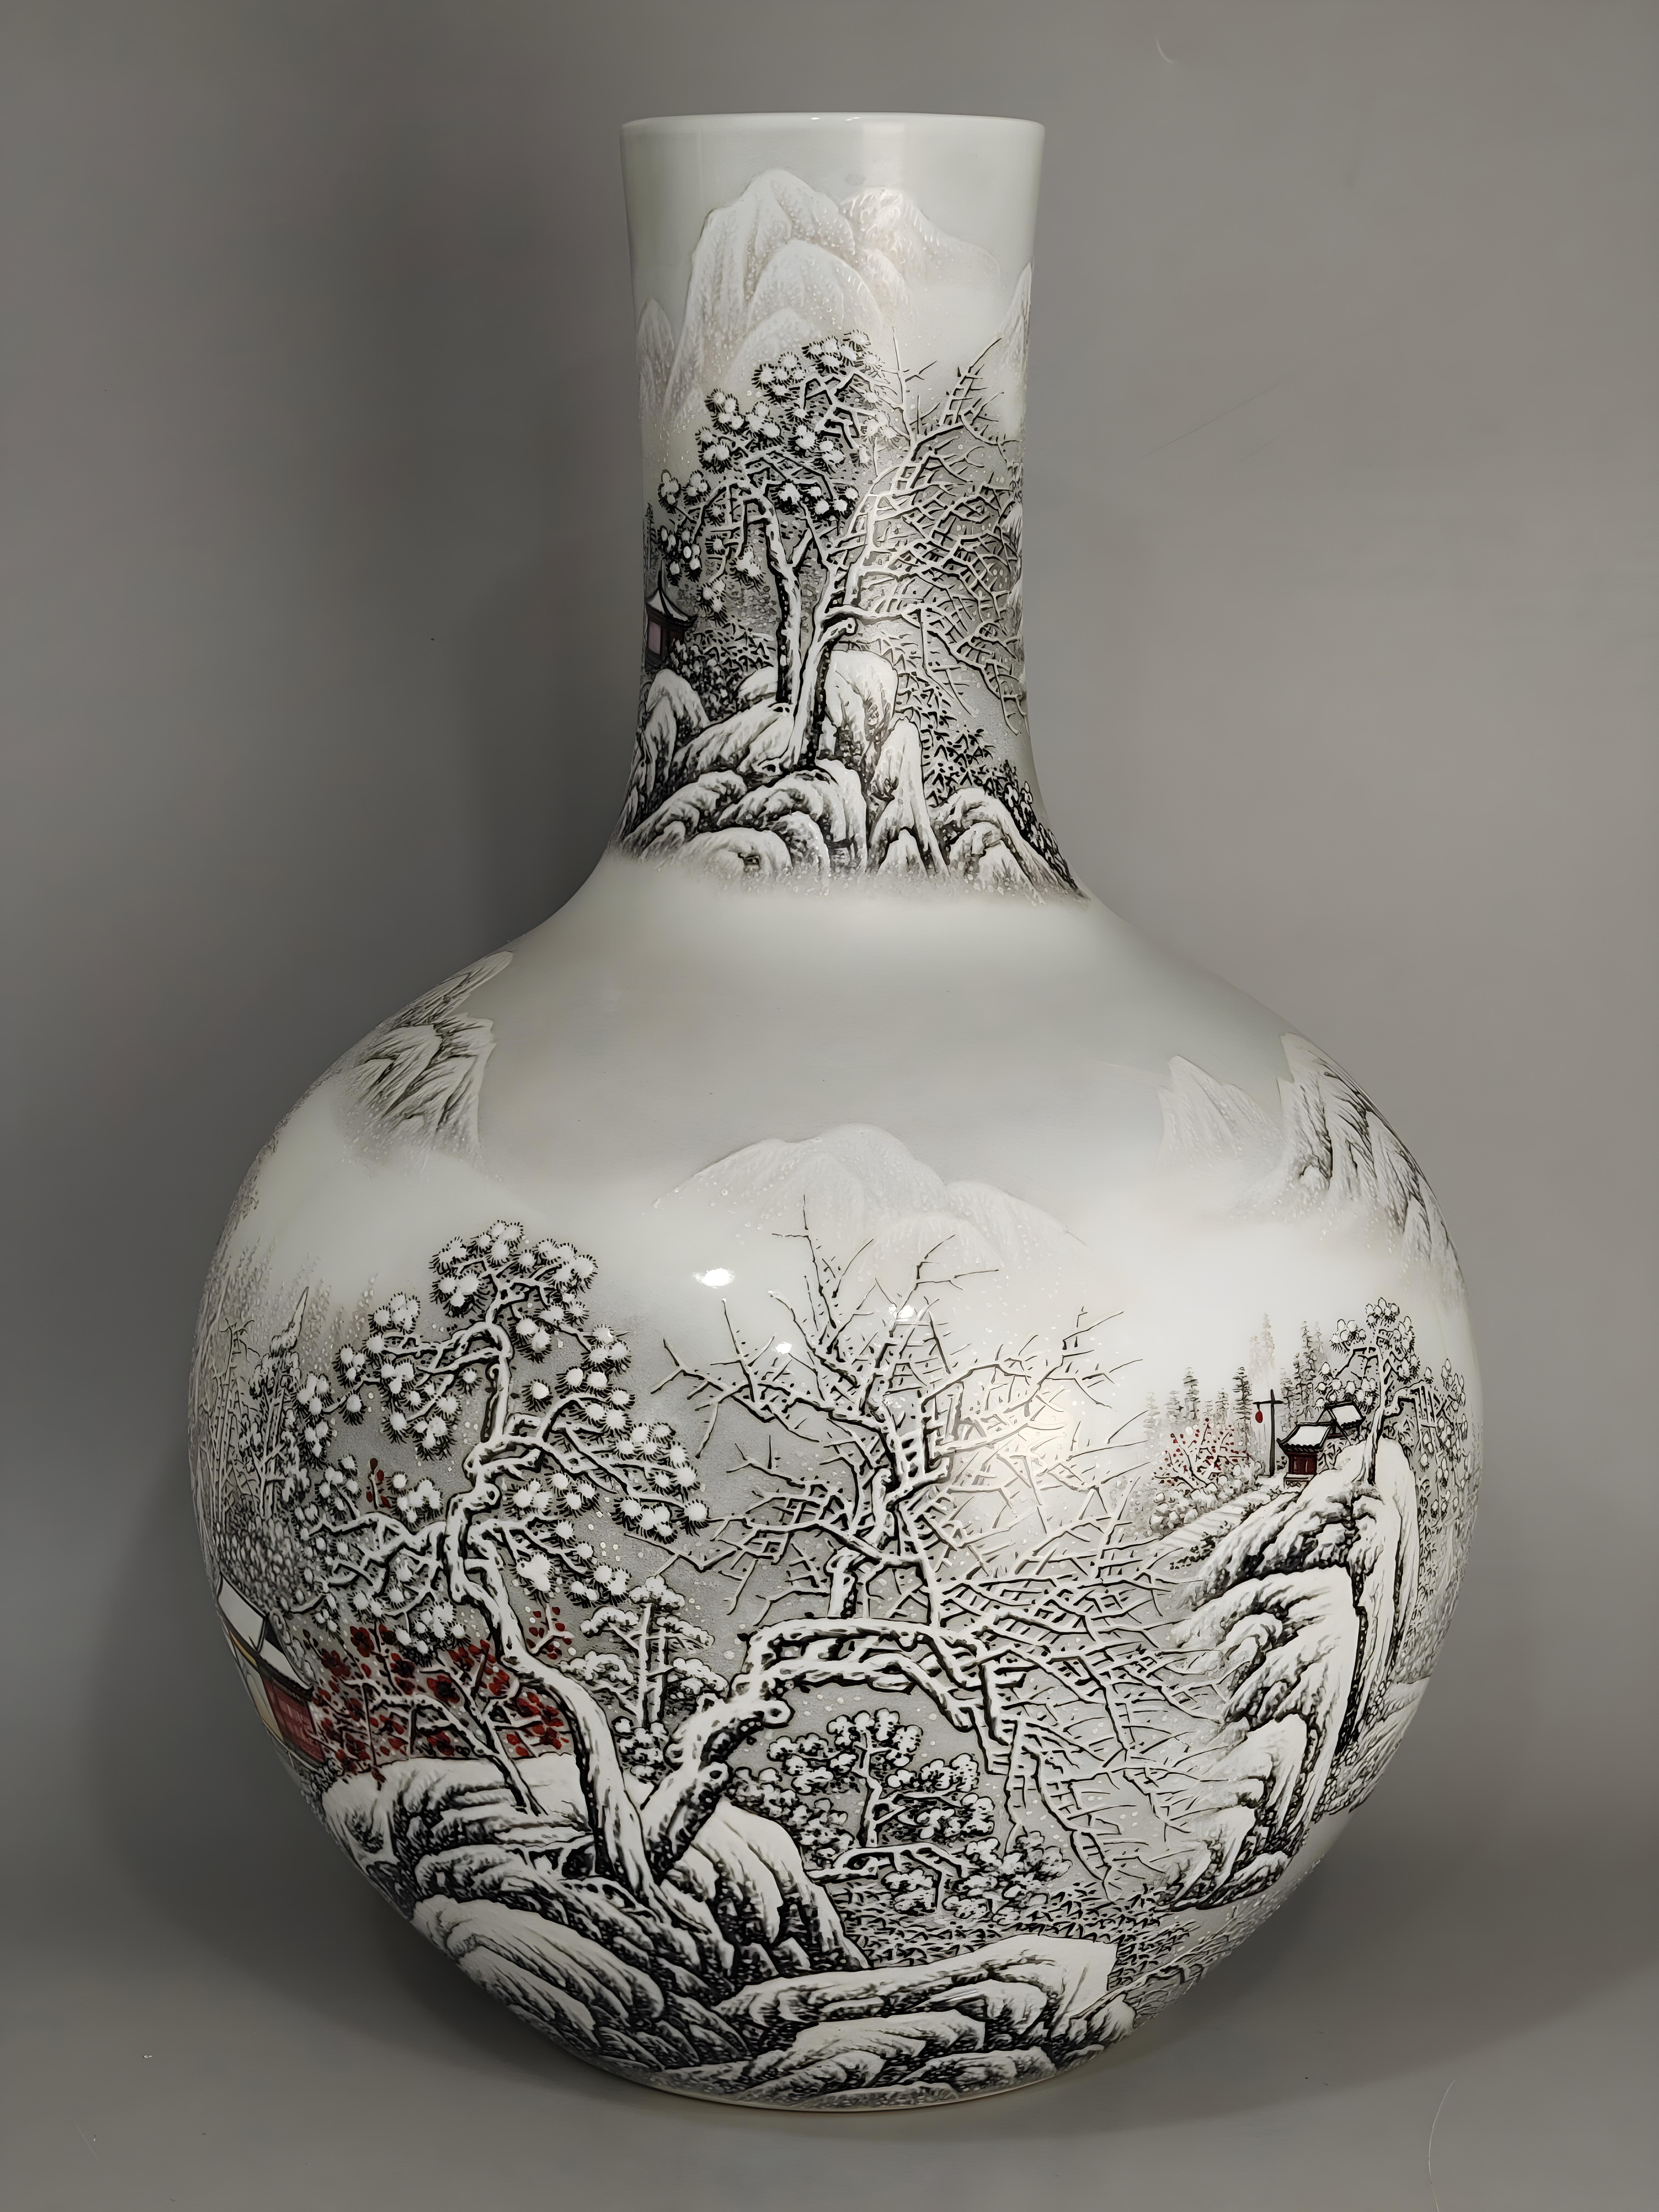 Un vase en porcelaine de Chine, plus précisément de Jingdezhen, fait référence à un vase fabriqué à Jingdezhen, un centre réputé pour la production de porcelaine en Chine. Ce vase présente un design de paysage enneigé, mettant en valeur une scène